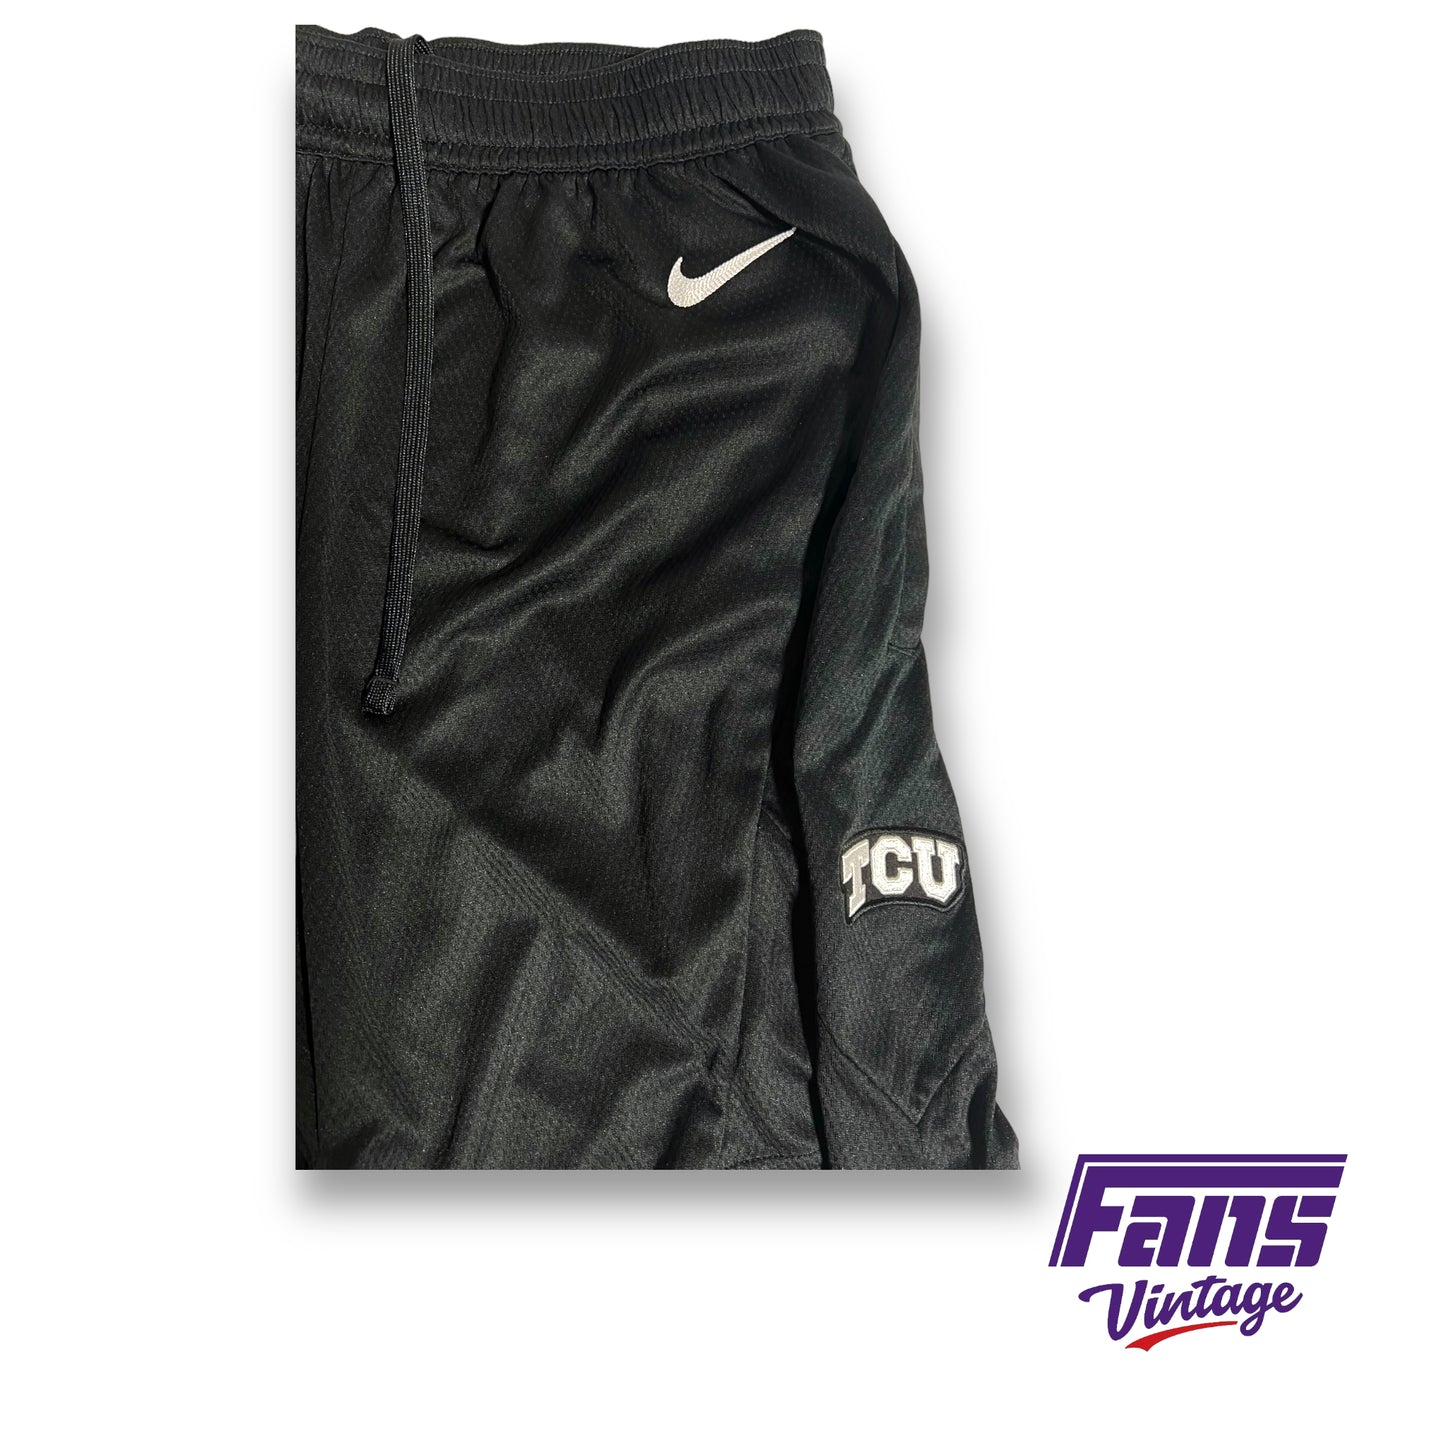 Nike TCU team issued dri-fit shorts - Slick